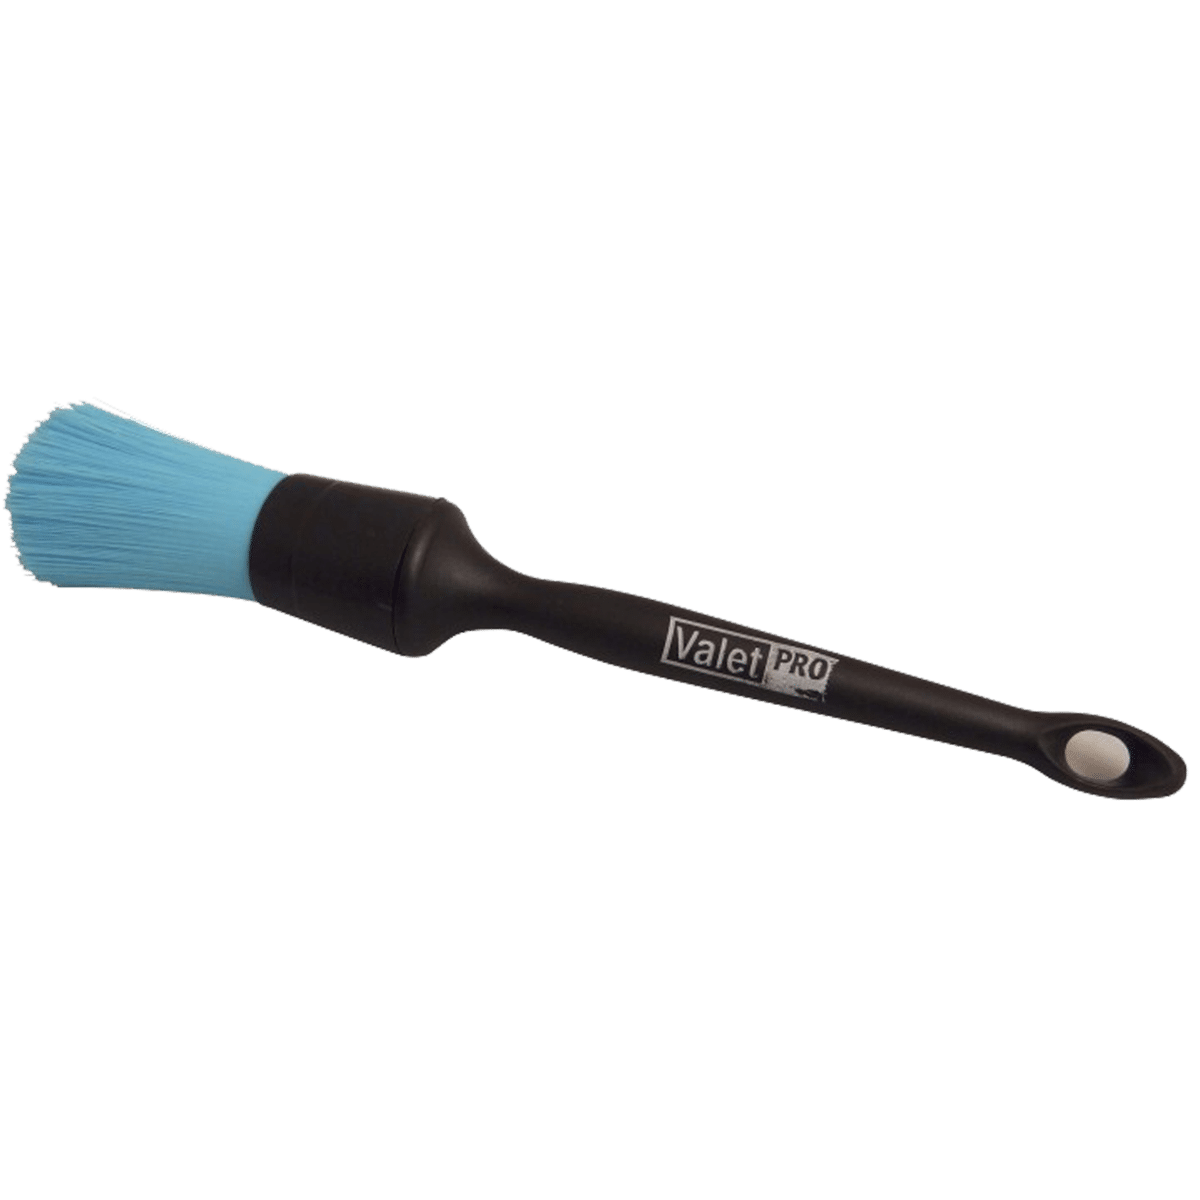 ValetPRO Chemical Resistant Brush Black Handle Pędzel do Detailingu Niebieskie Włosie Rozmiar 18